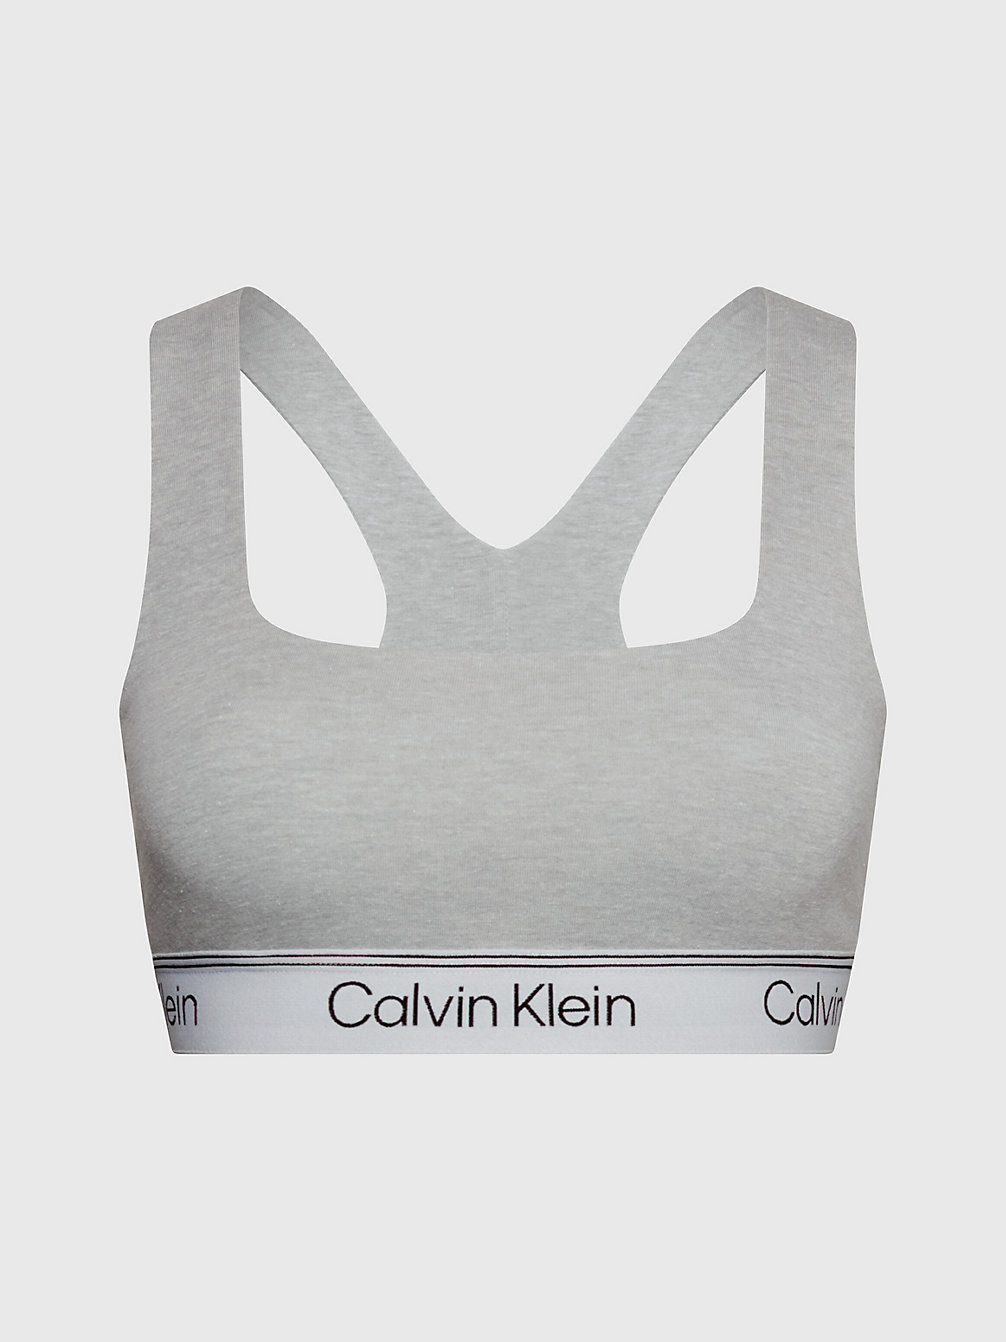 ATH GREY HEATHER Bralette - Athletic Cotton undefined Damen Calvin Klein